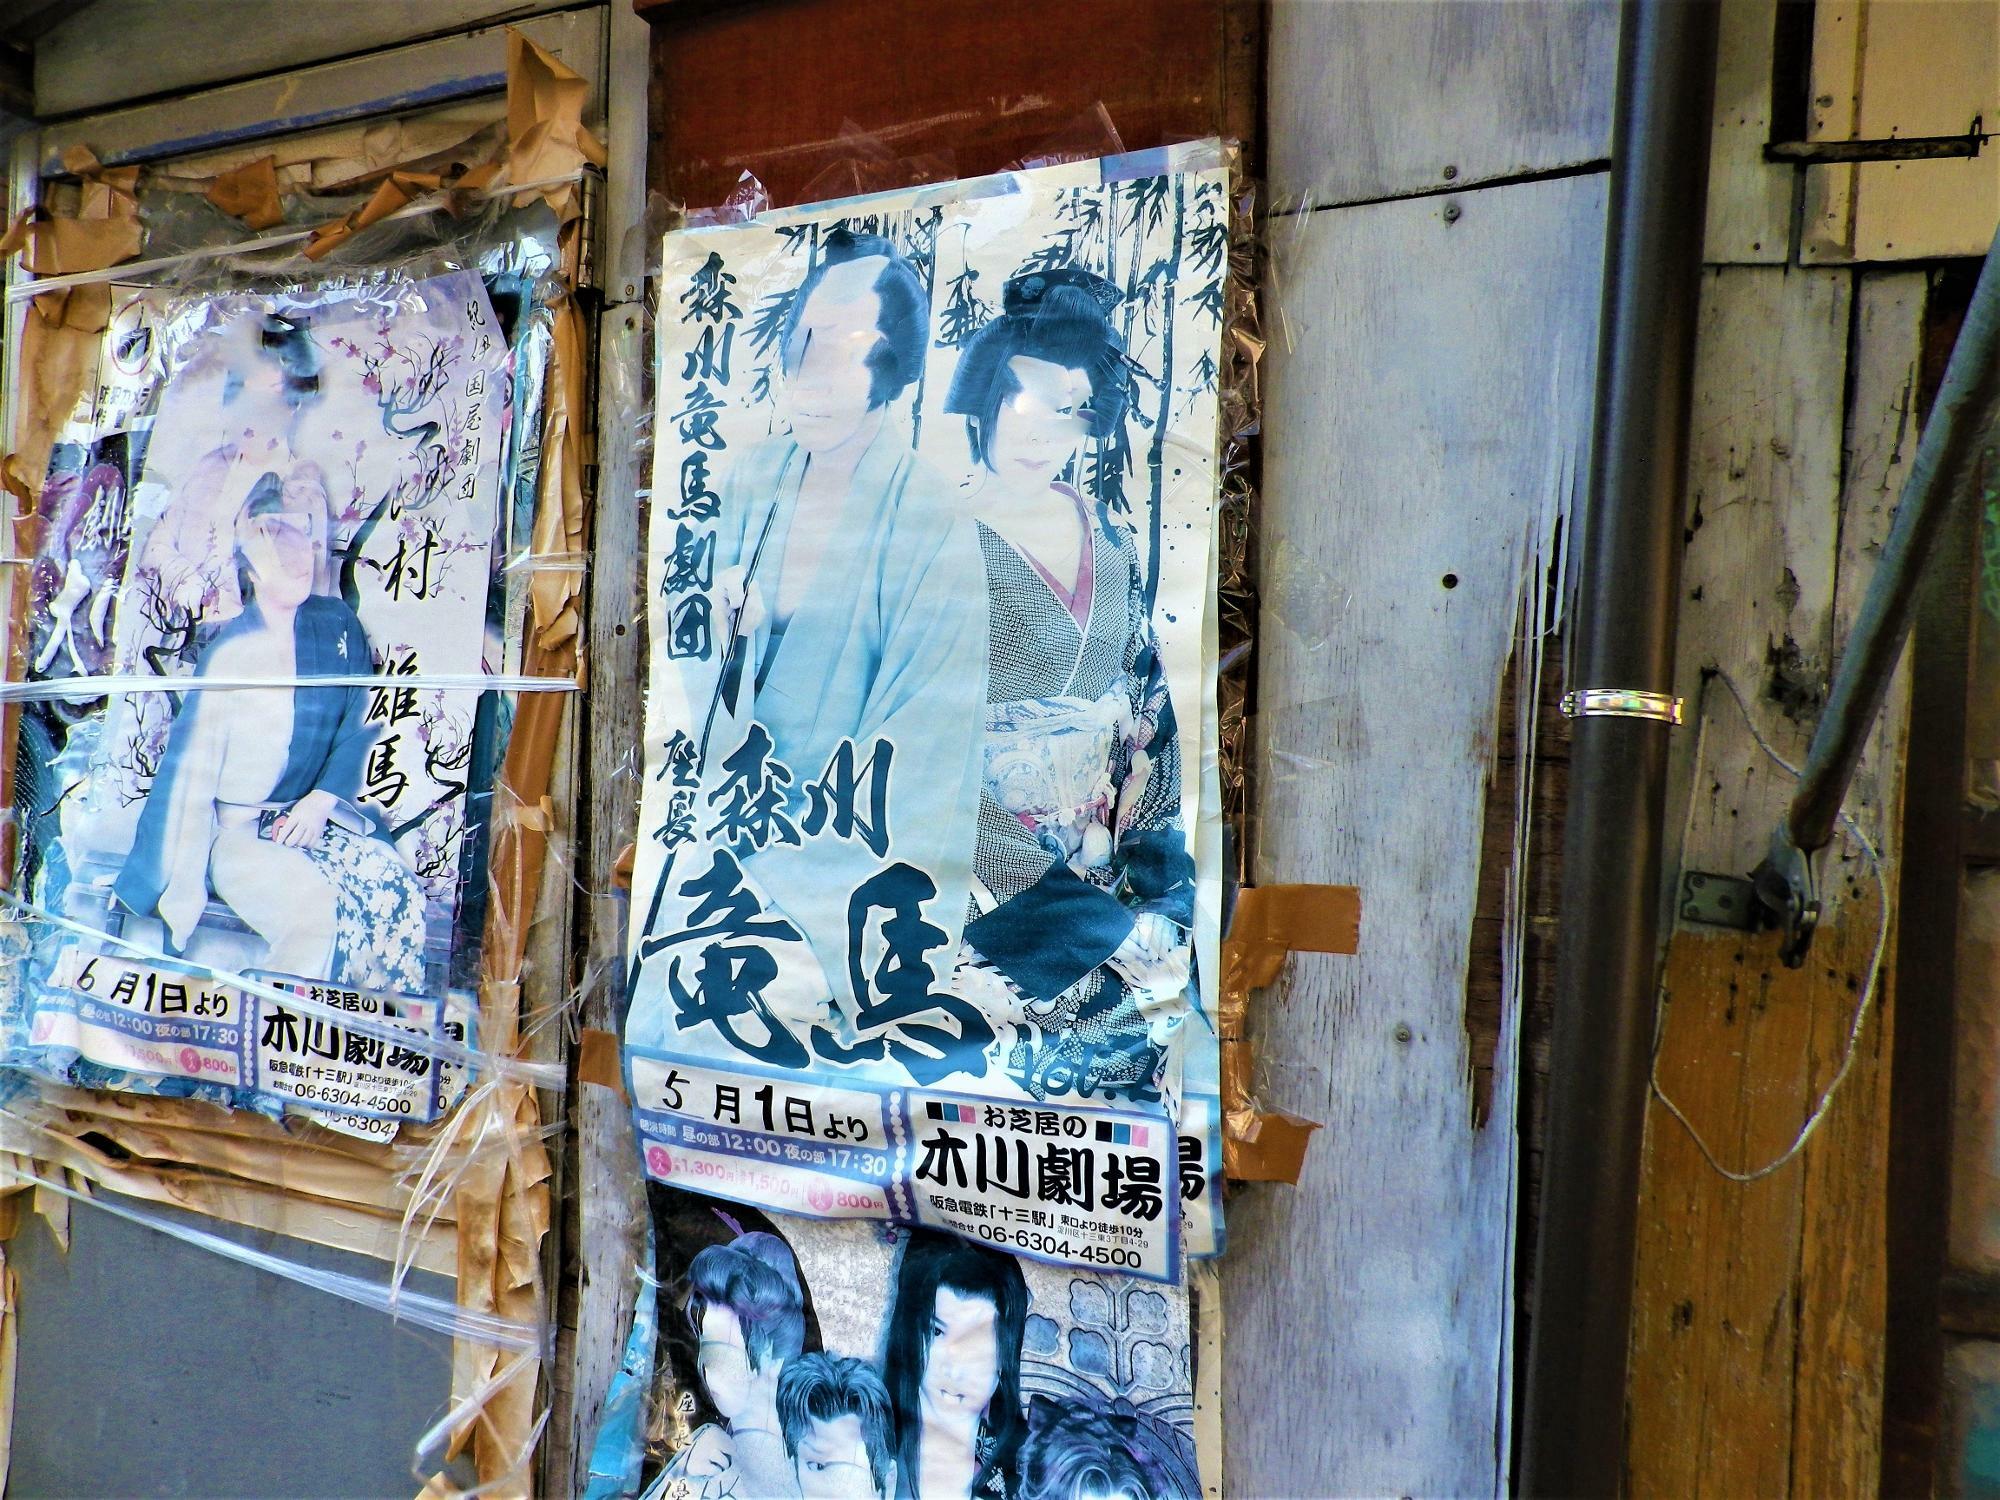 つばめ通りのあちこちに貼られた「木川劇場」のポスター。